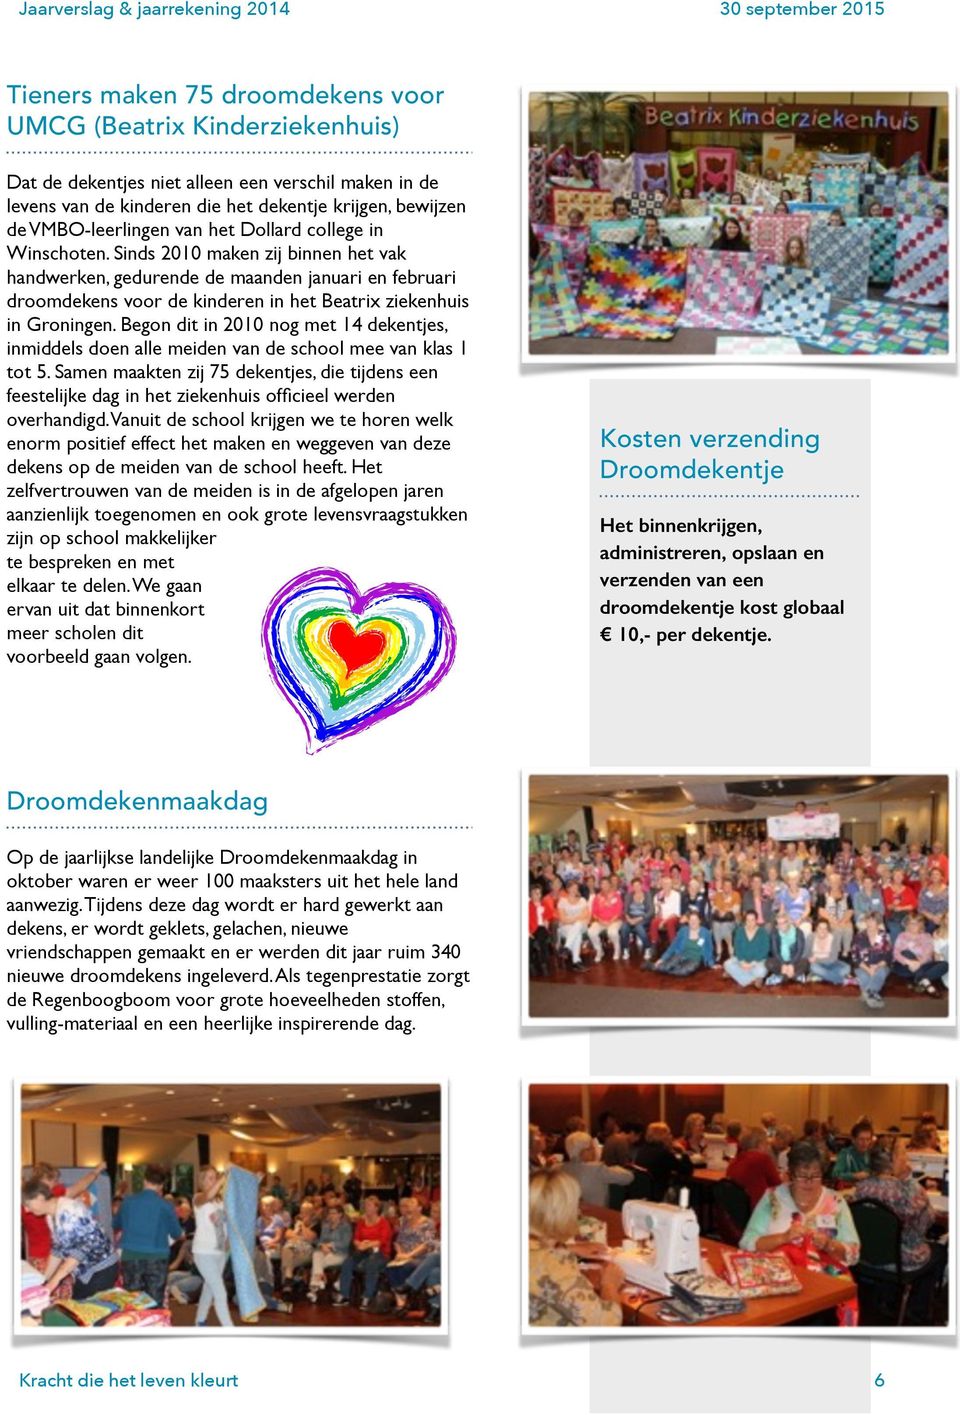 Sinds 2010 maken zij binnen het vak handwerken, gedurende de maanden januari en februari droomdekens voor de kinderen in het Beatrix ziekenhuis in Groningen.